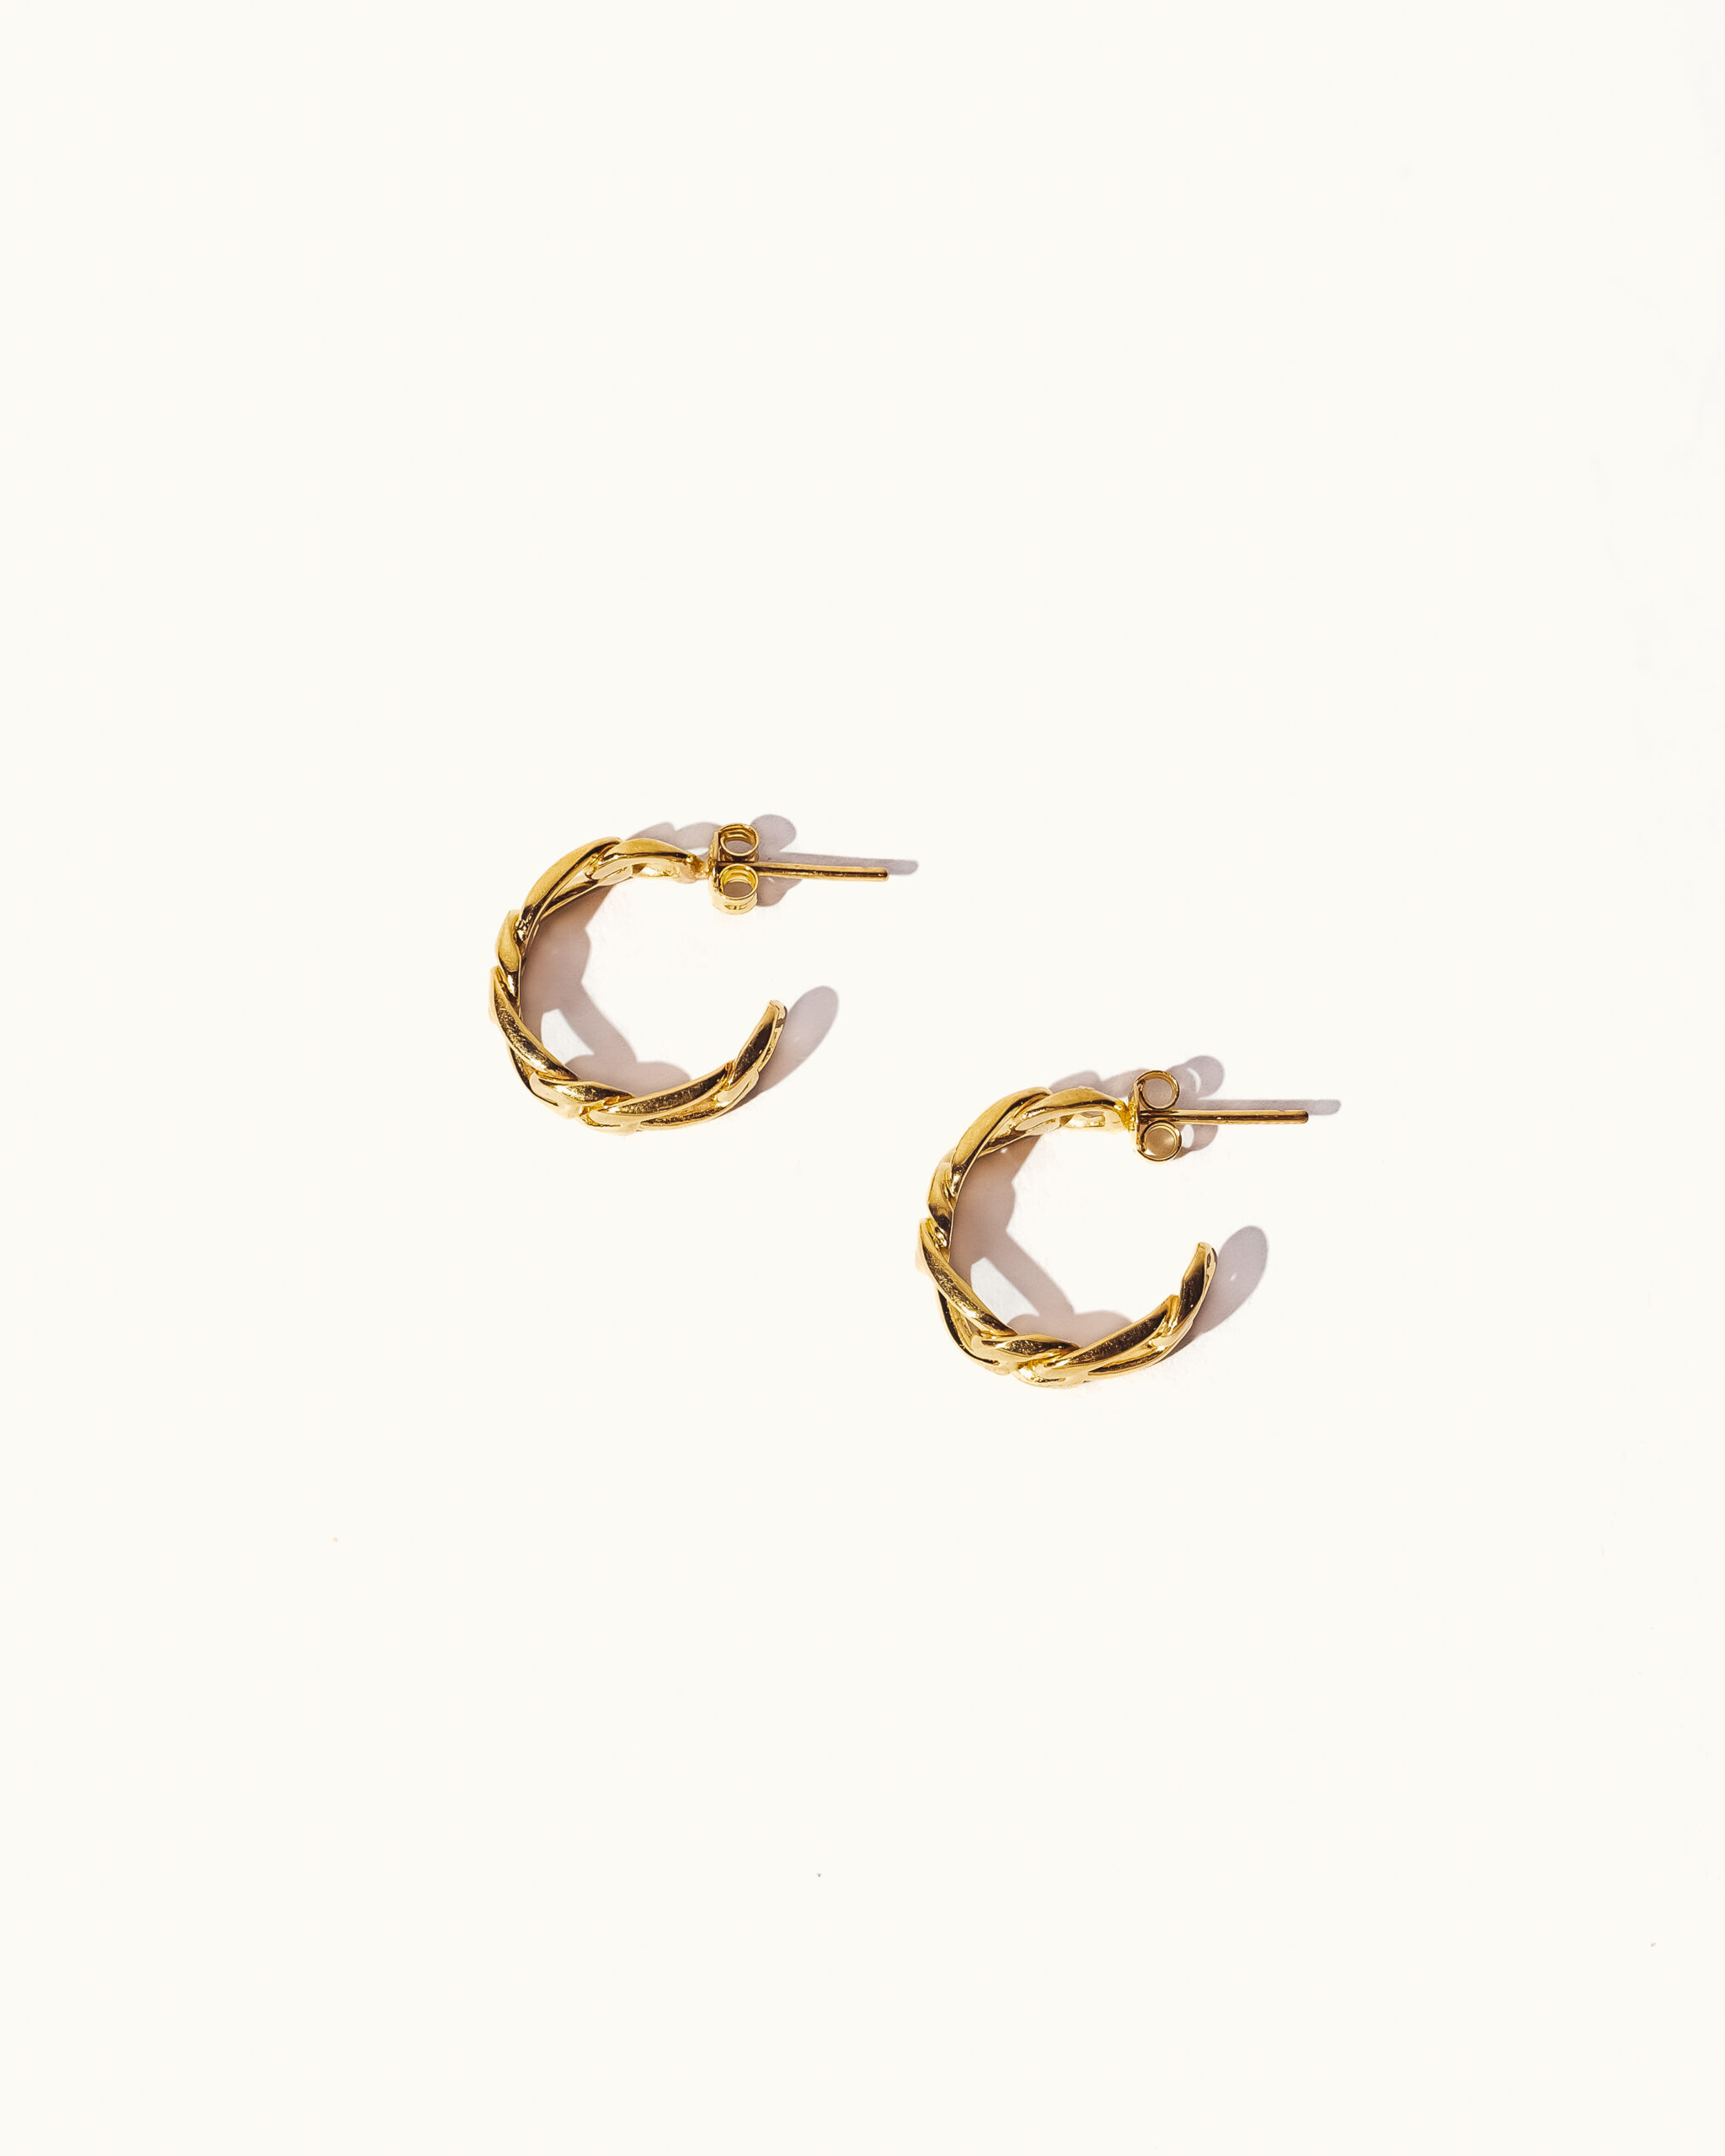 Kiva Store | Ornate 22k Gold Vermeil Hoop Earrings from Indonesia - Garden  of Eden